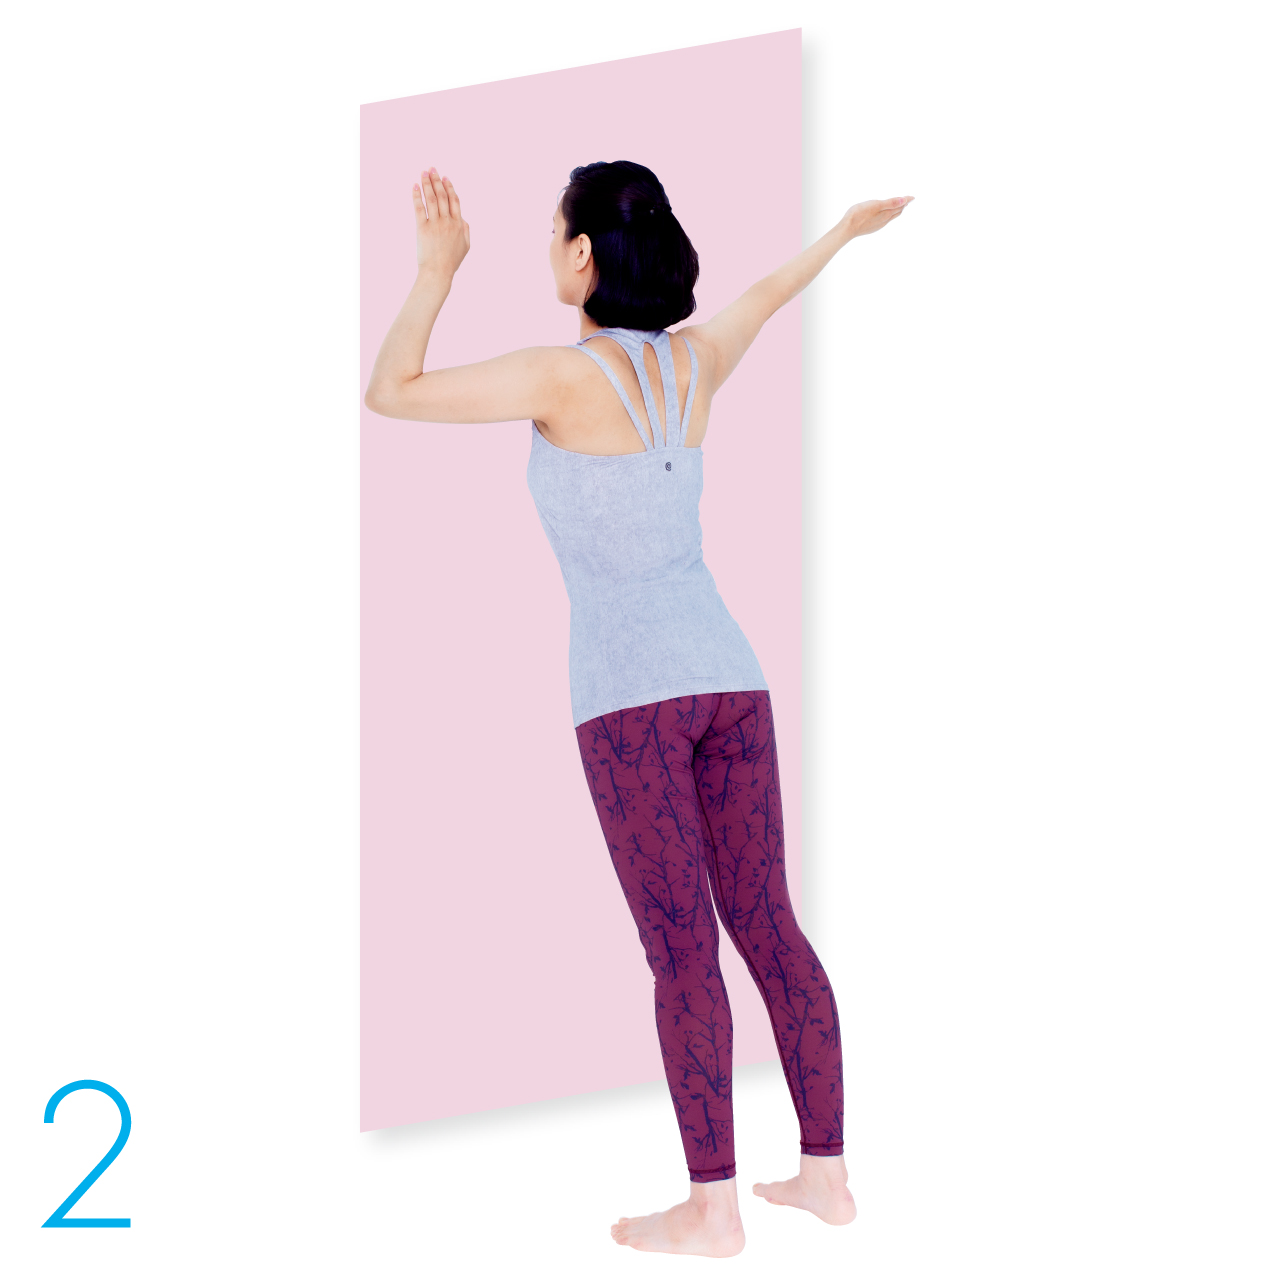 足の位置を動かさずに、右肩を壁に押しつけるようなイメージで、上半身をゆっくり壁に近づけます